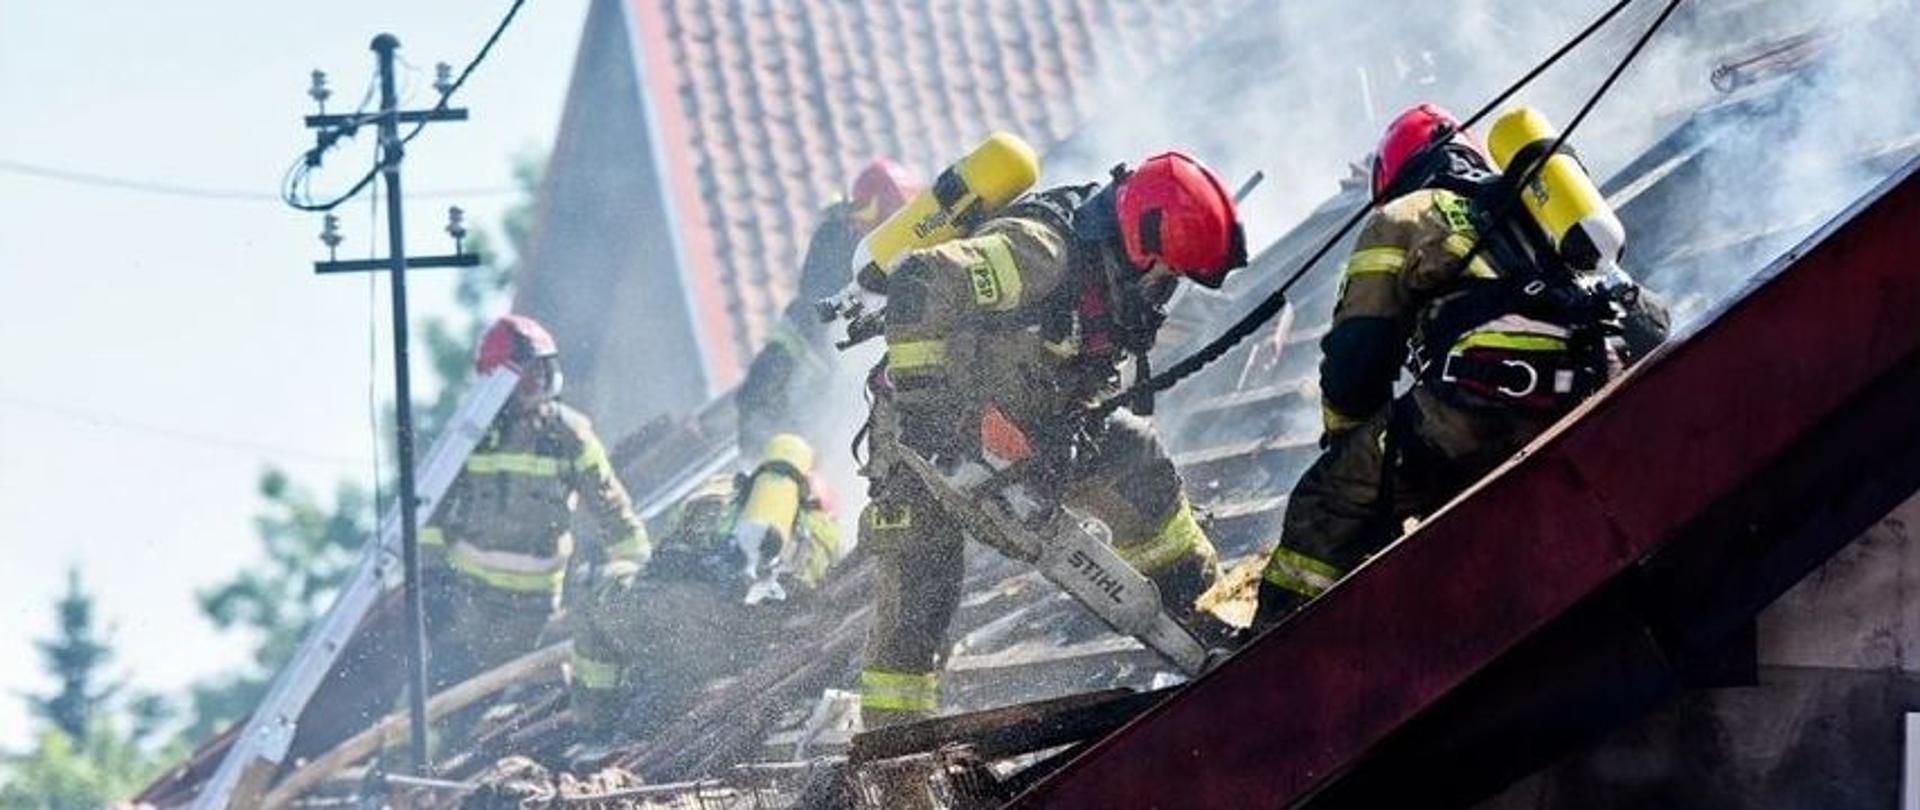 Strażacy podczas prac rozbiórkowych na dachu palącego się wcześniej obiektu. Przy użyciu pilarek mechanicznych i sprzętu burzącego rozbierają spalona konstrukcję dachu.